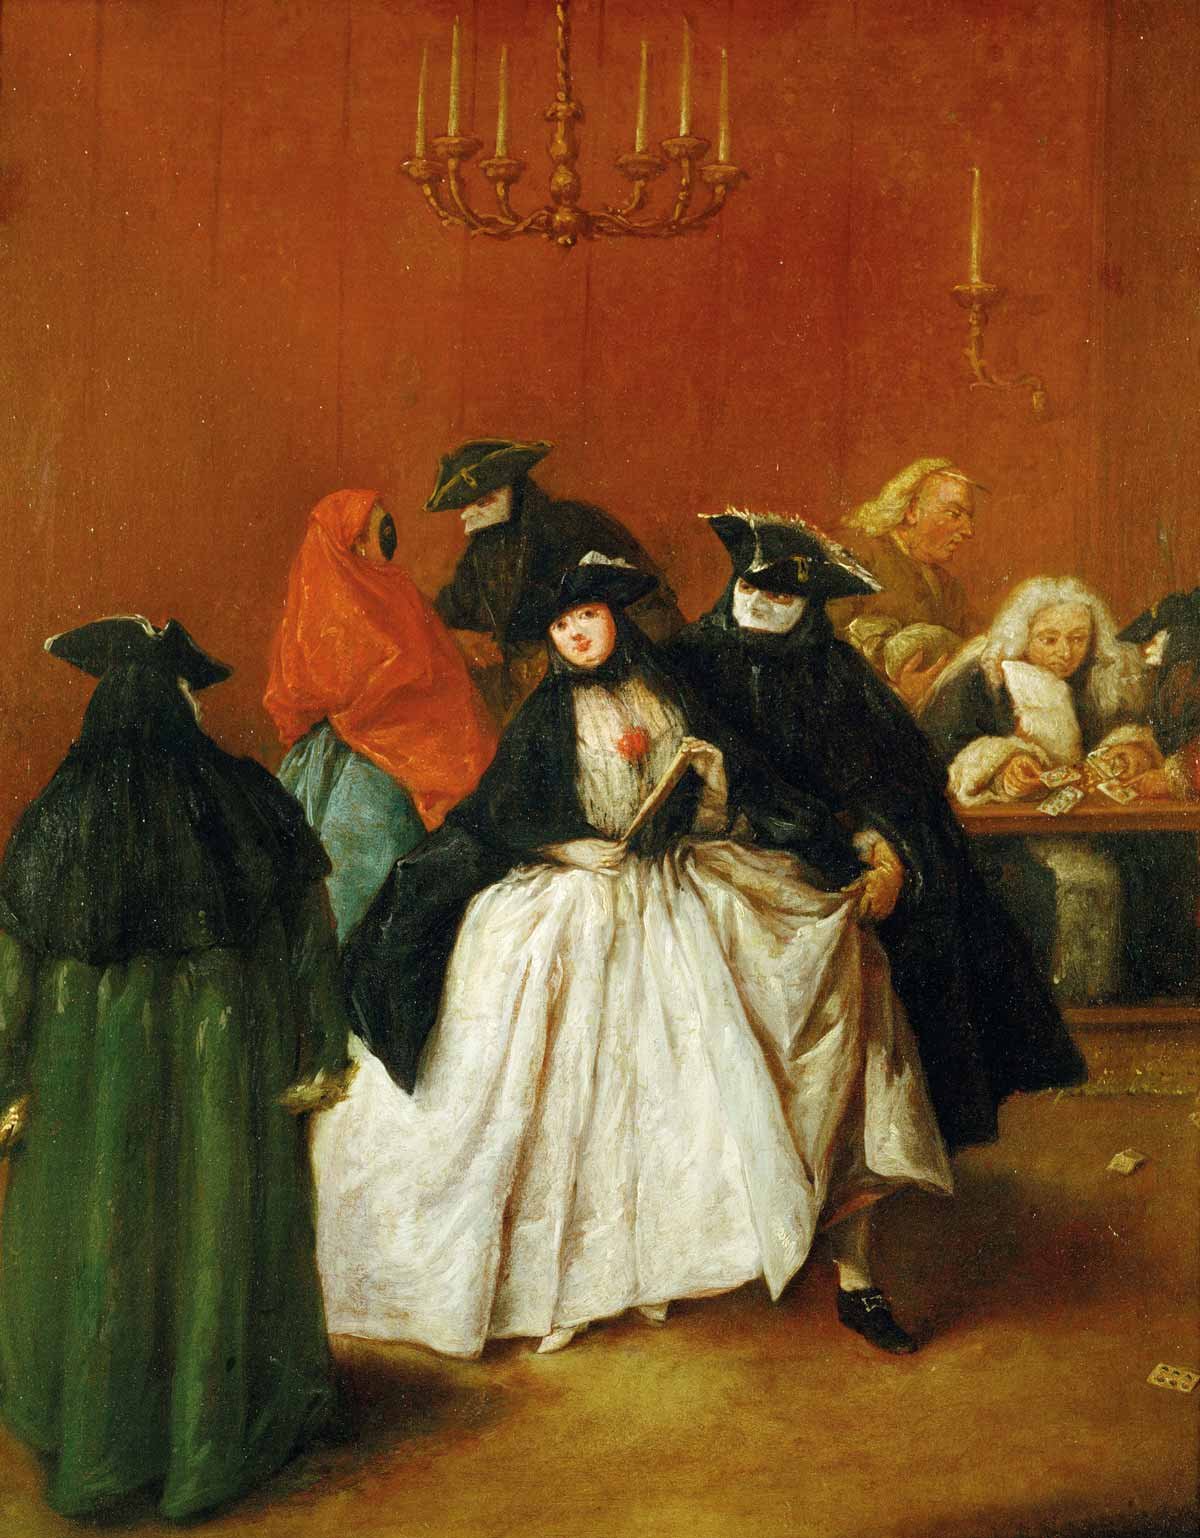 Escena de una fiesta privada en carnaval, en un Ridotto, donde se practican juegos de azar. Por Pietro Longhi (1701-1785), pintor costumbrista que reflejó con brillantez la vida cotidiana de Venecia en el siglo XVIII.